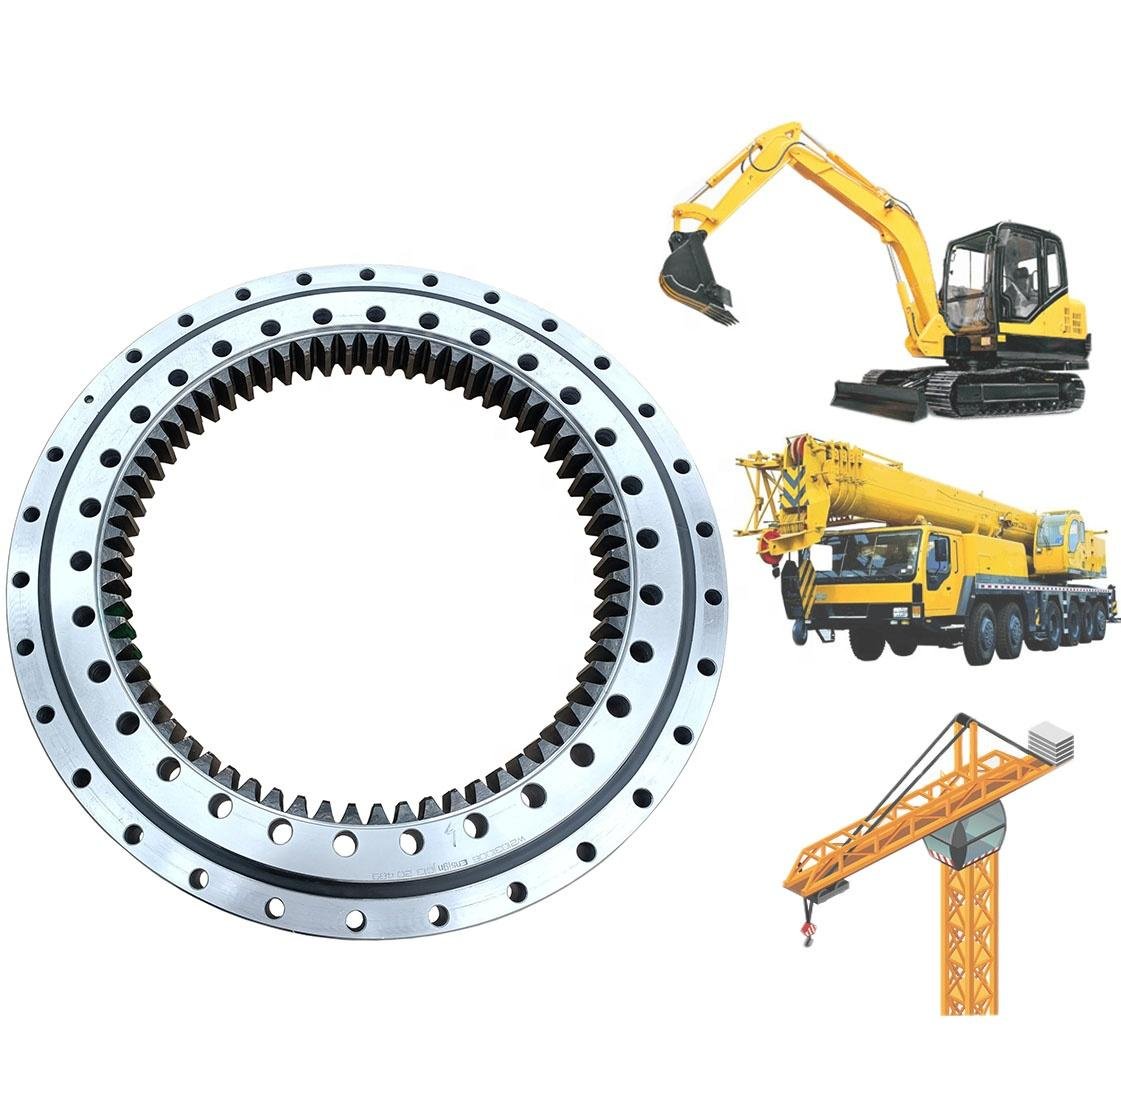 SCC550 Excavator Swing Ring Bearing Part No 10942045